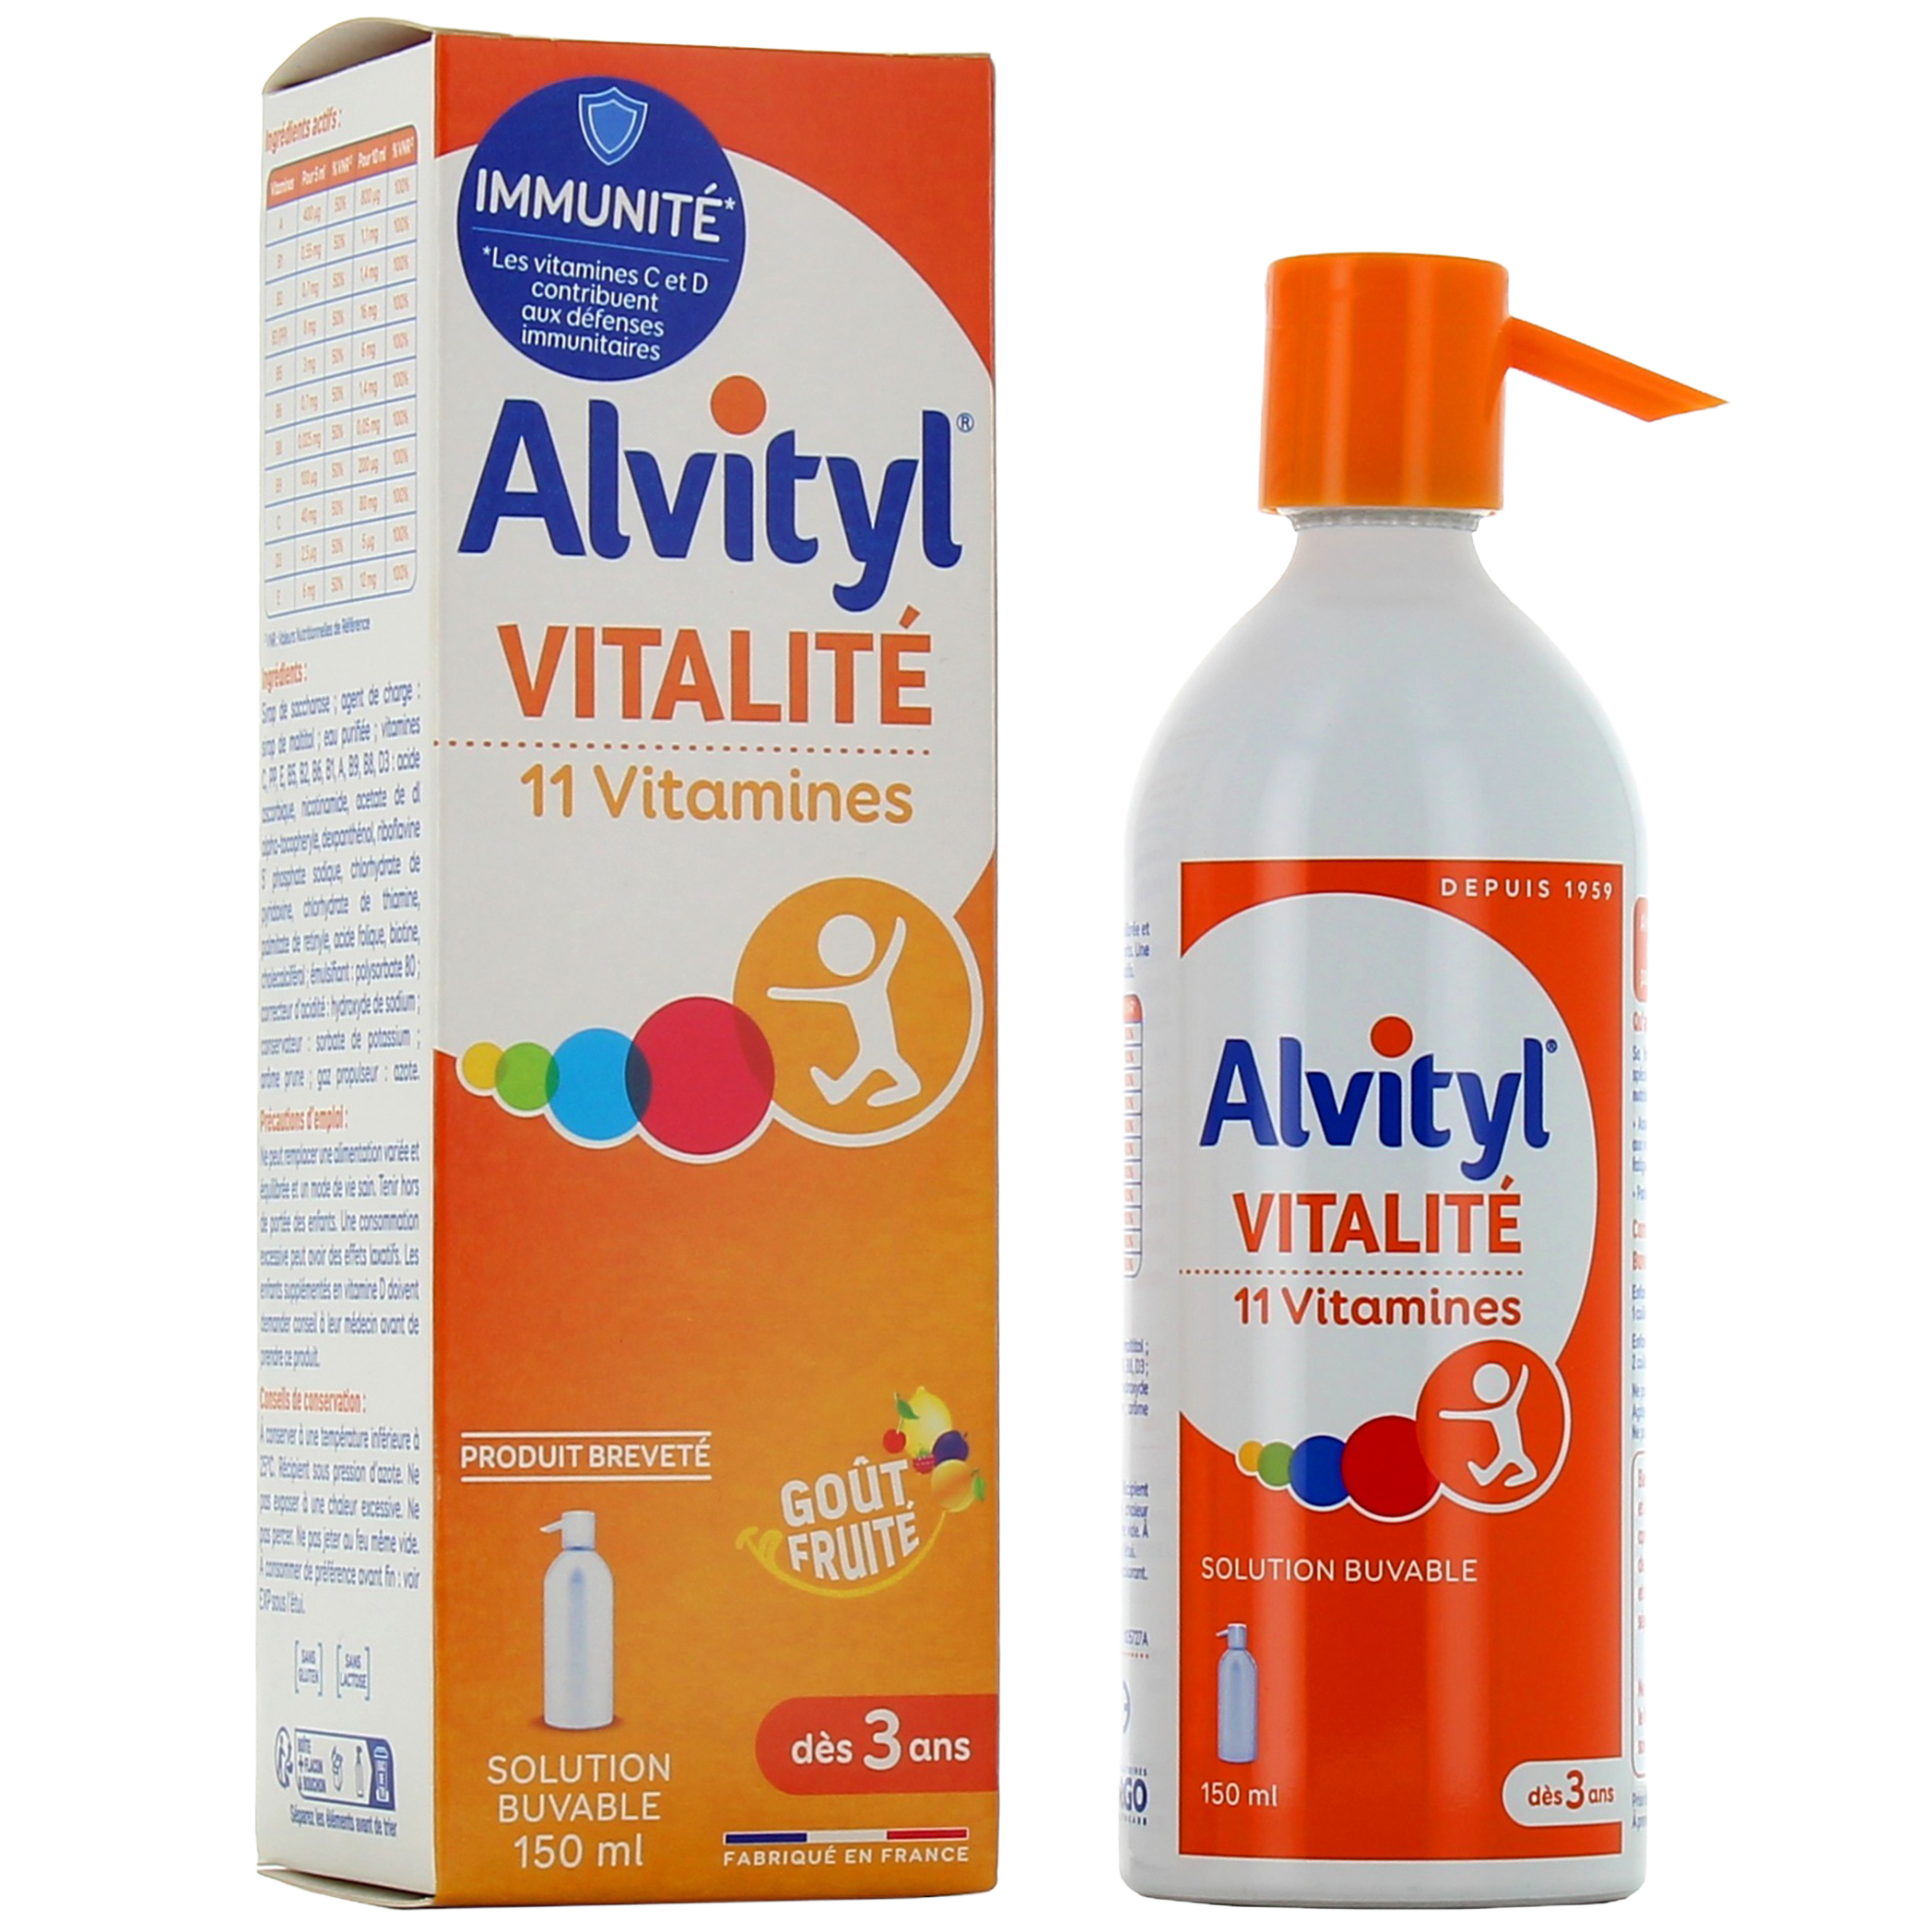 Alvityl Comprimés - Livraison partout en Algérie - Parapharmacie